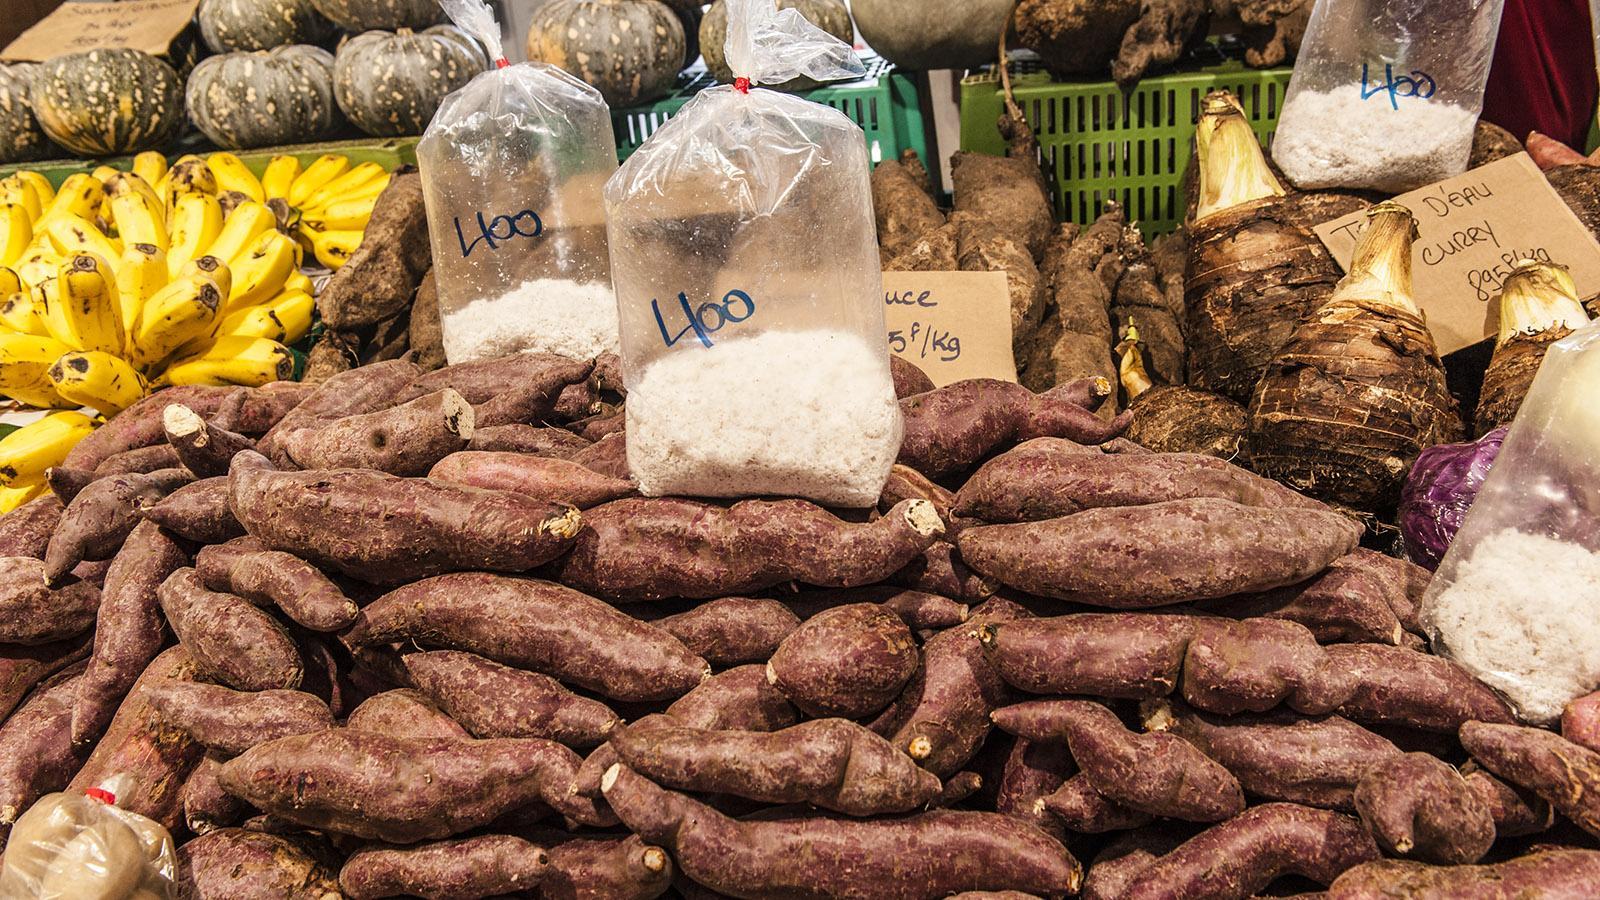 Marché de Nouméa: Roh sind sie giftig, geraspelt und gekocht Grundstock der Ernährung: Wurzeln wie Maniok, Yams und Taro. Foto: Hilke Maunder